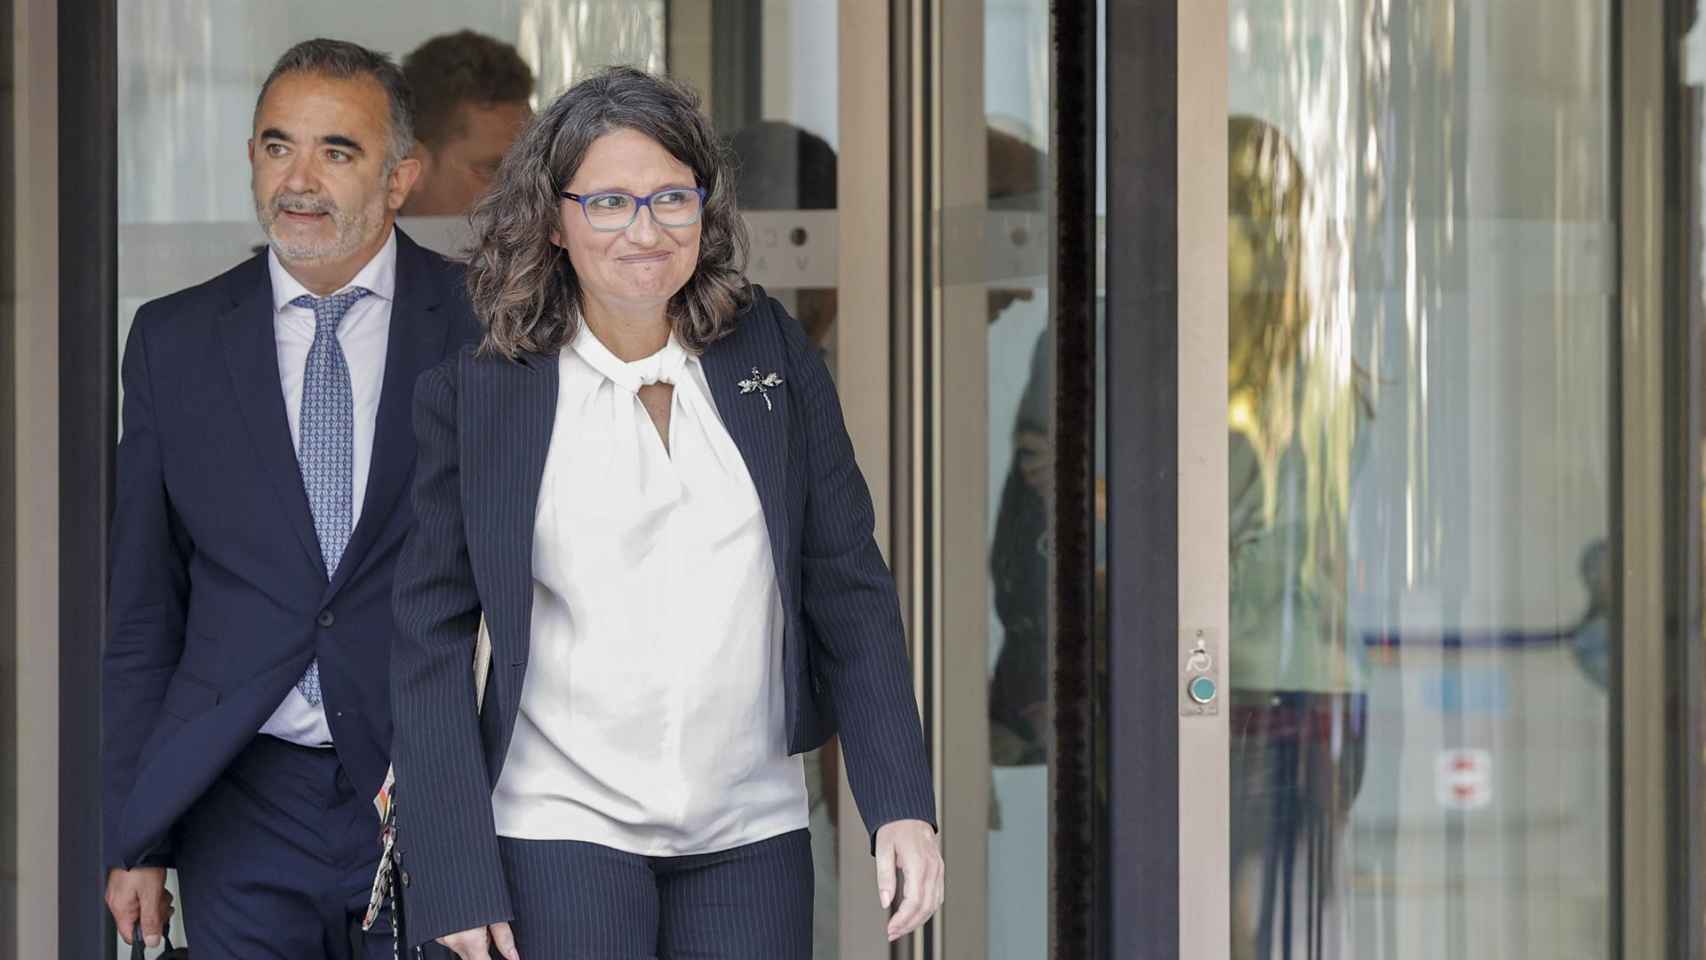 Mónica Oltra, junto a su abogado al salir del juzgado tras declarar como imputada. Efe / Manuel Bruque